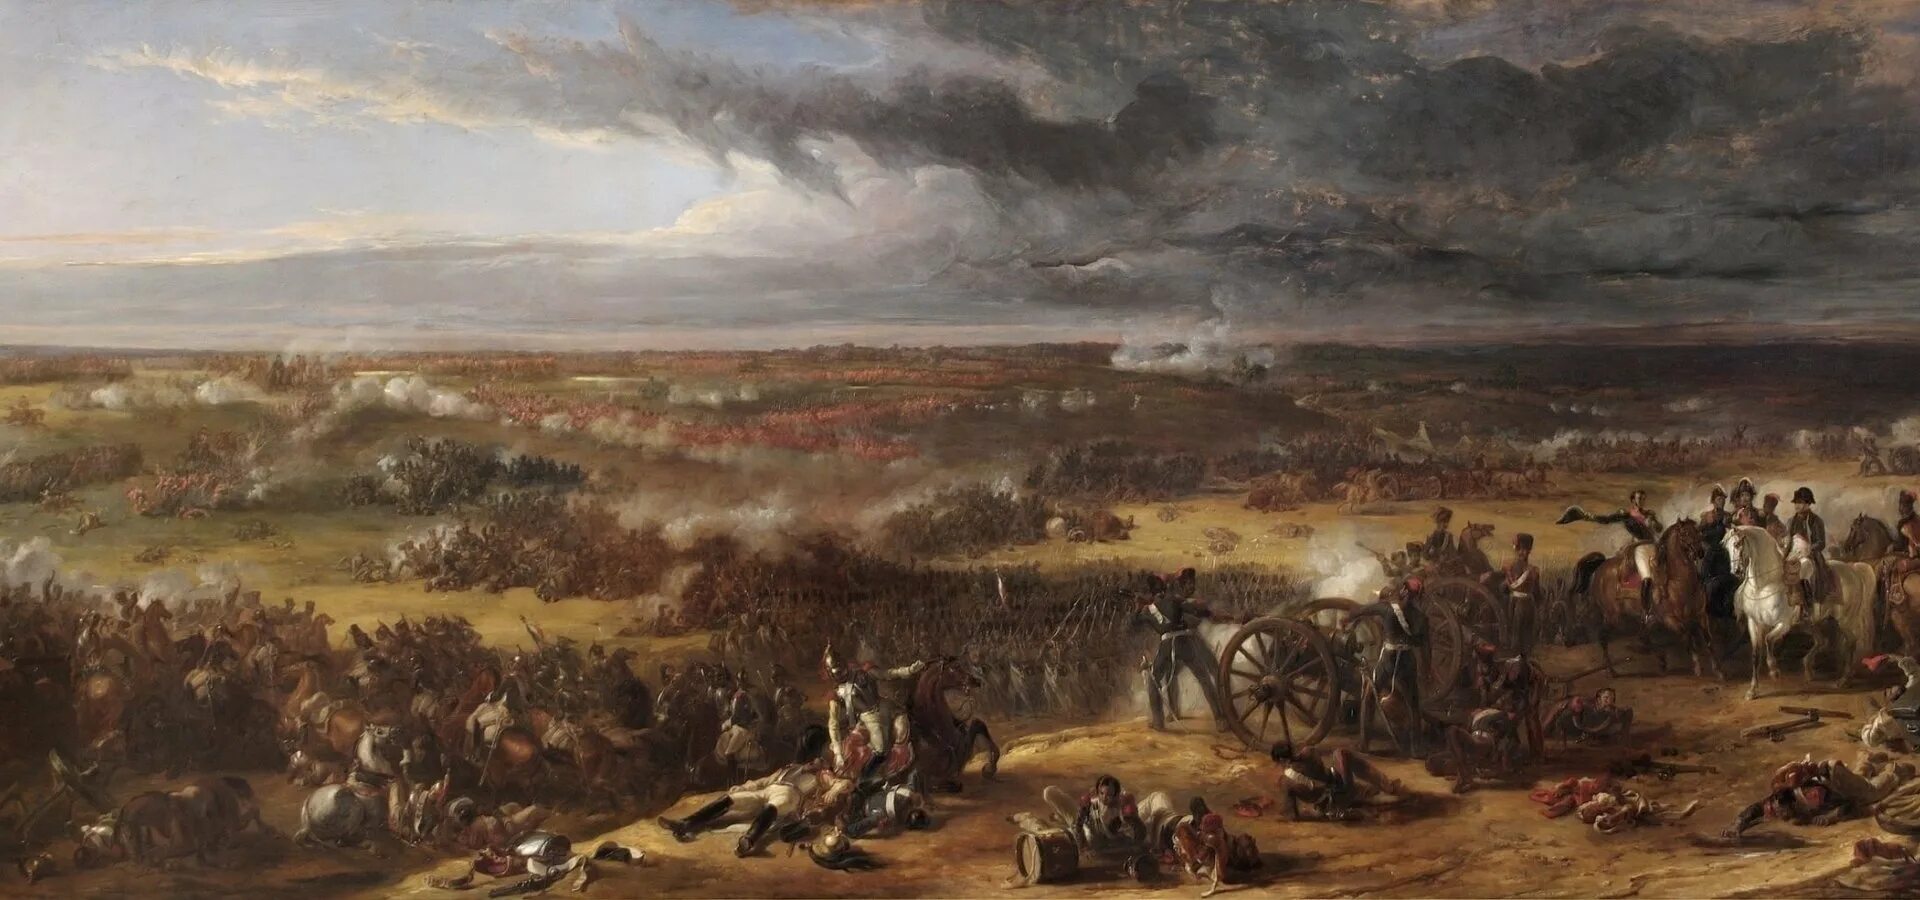 Поля сражений с другом. Наполеон битва Ватерлоо. Наполеон битва Ватерлоо художник. Наполеон Бонапарт 1815. Ватерлоо битва картины.